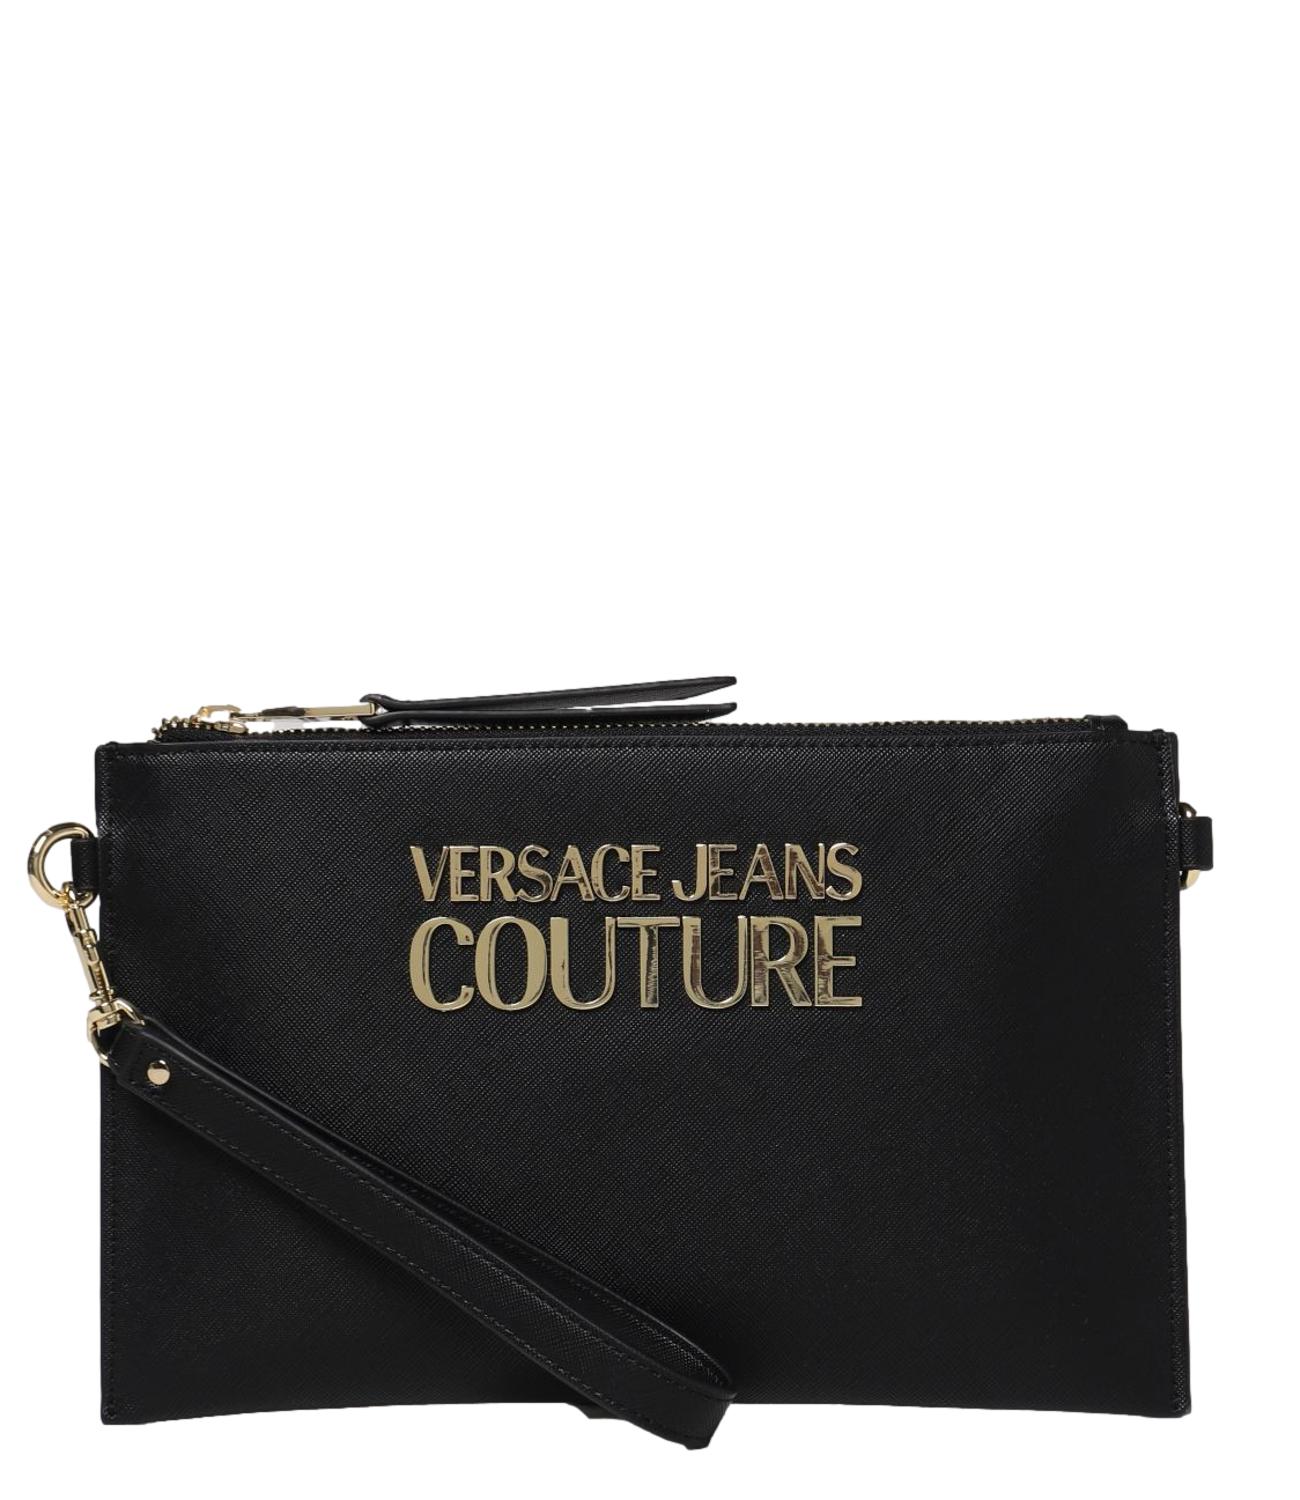 Versace Jeans Couture women's black bag